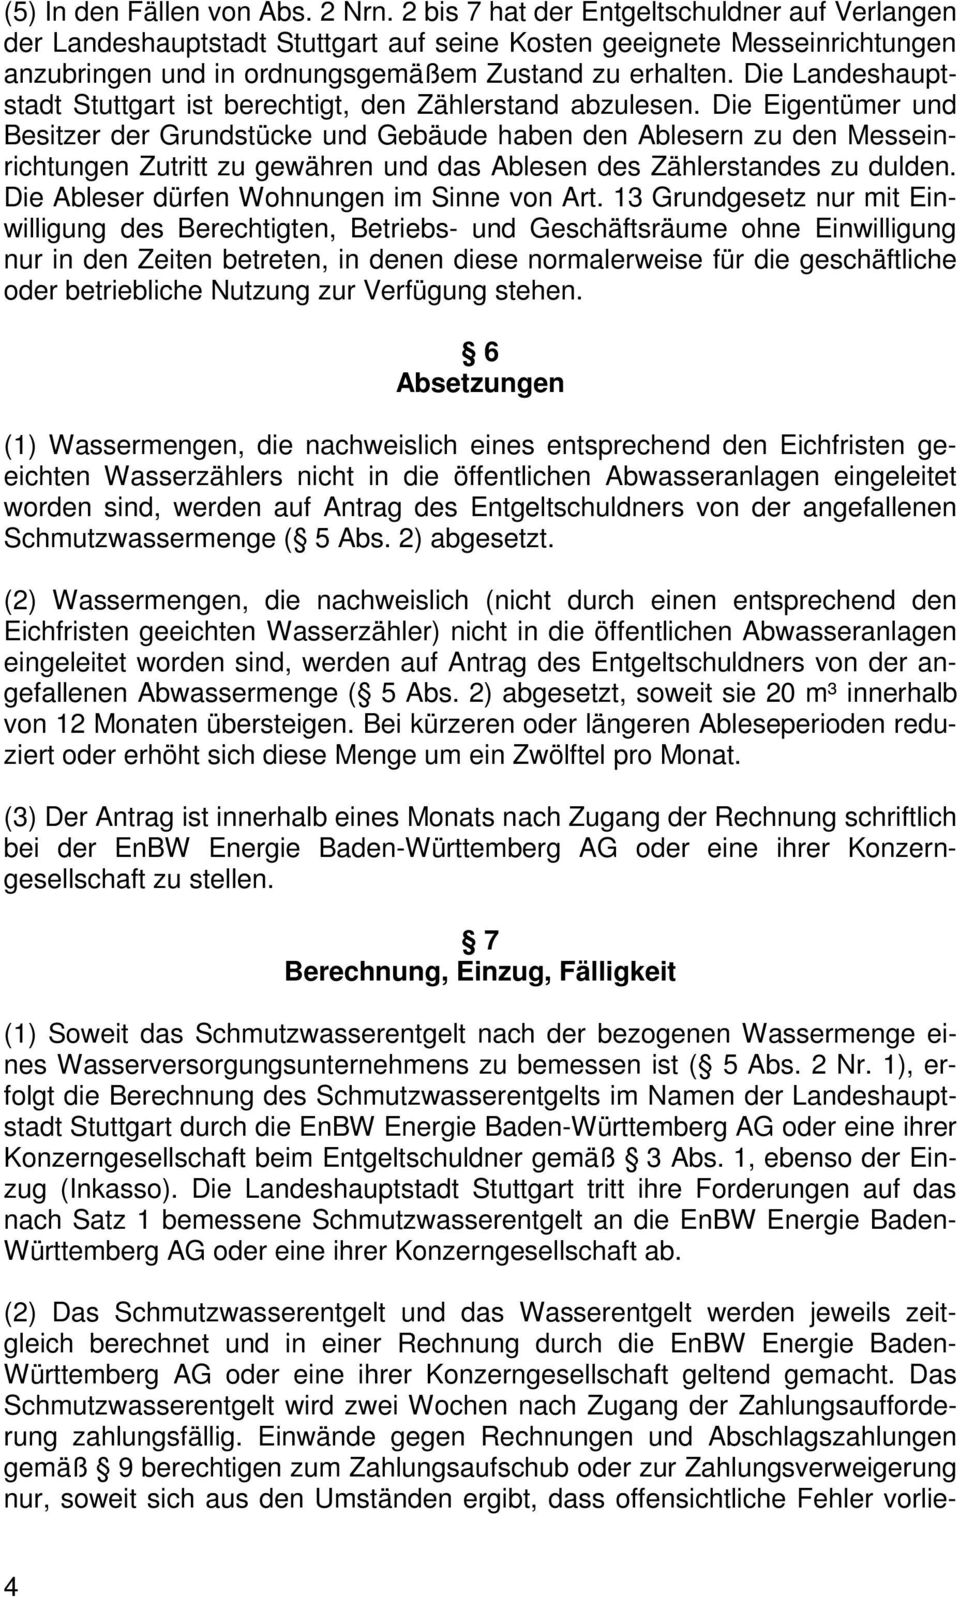 Die Landeshauptstadt Stuttgart ist berechtigt, den Zählerstand abzulesen.